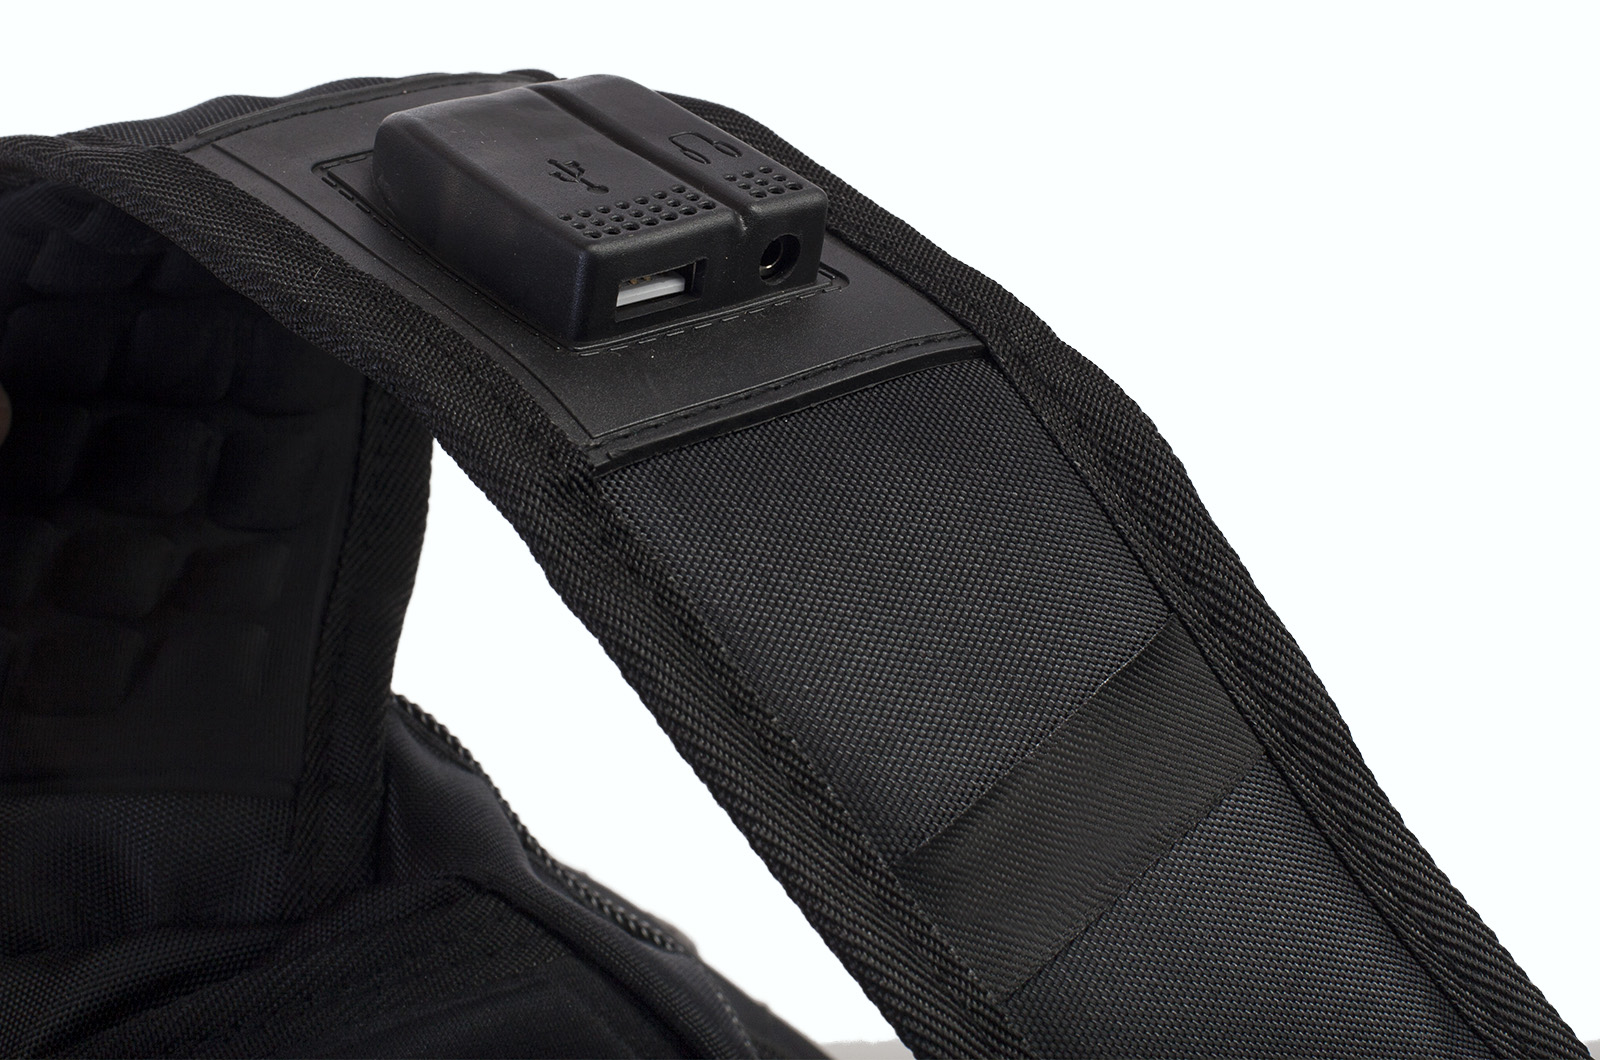 Многофункциональный черный рюкзак  шевроном Каратель (36 - 55 л) 